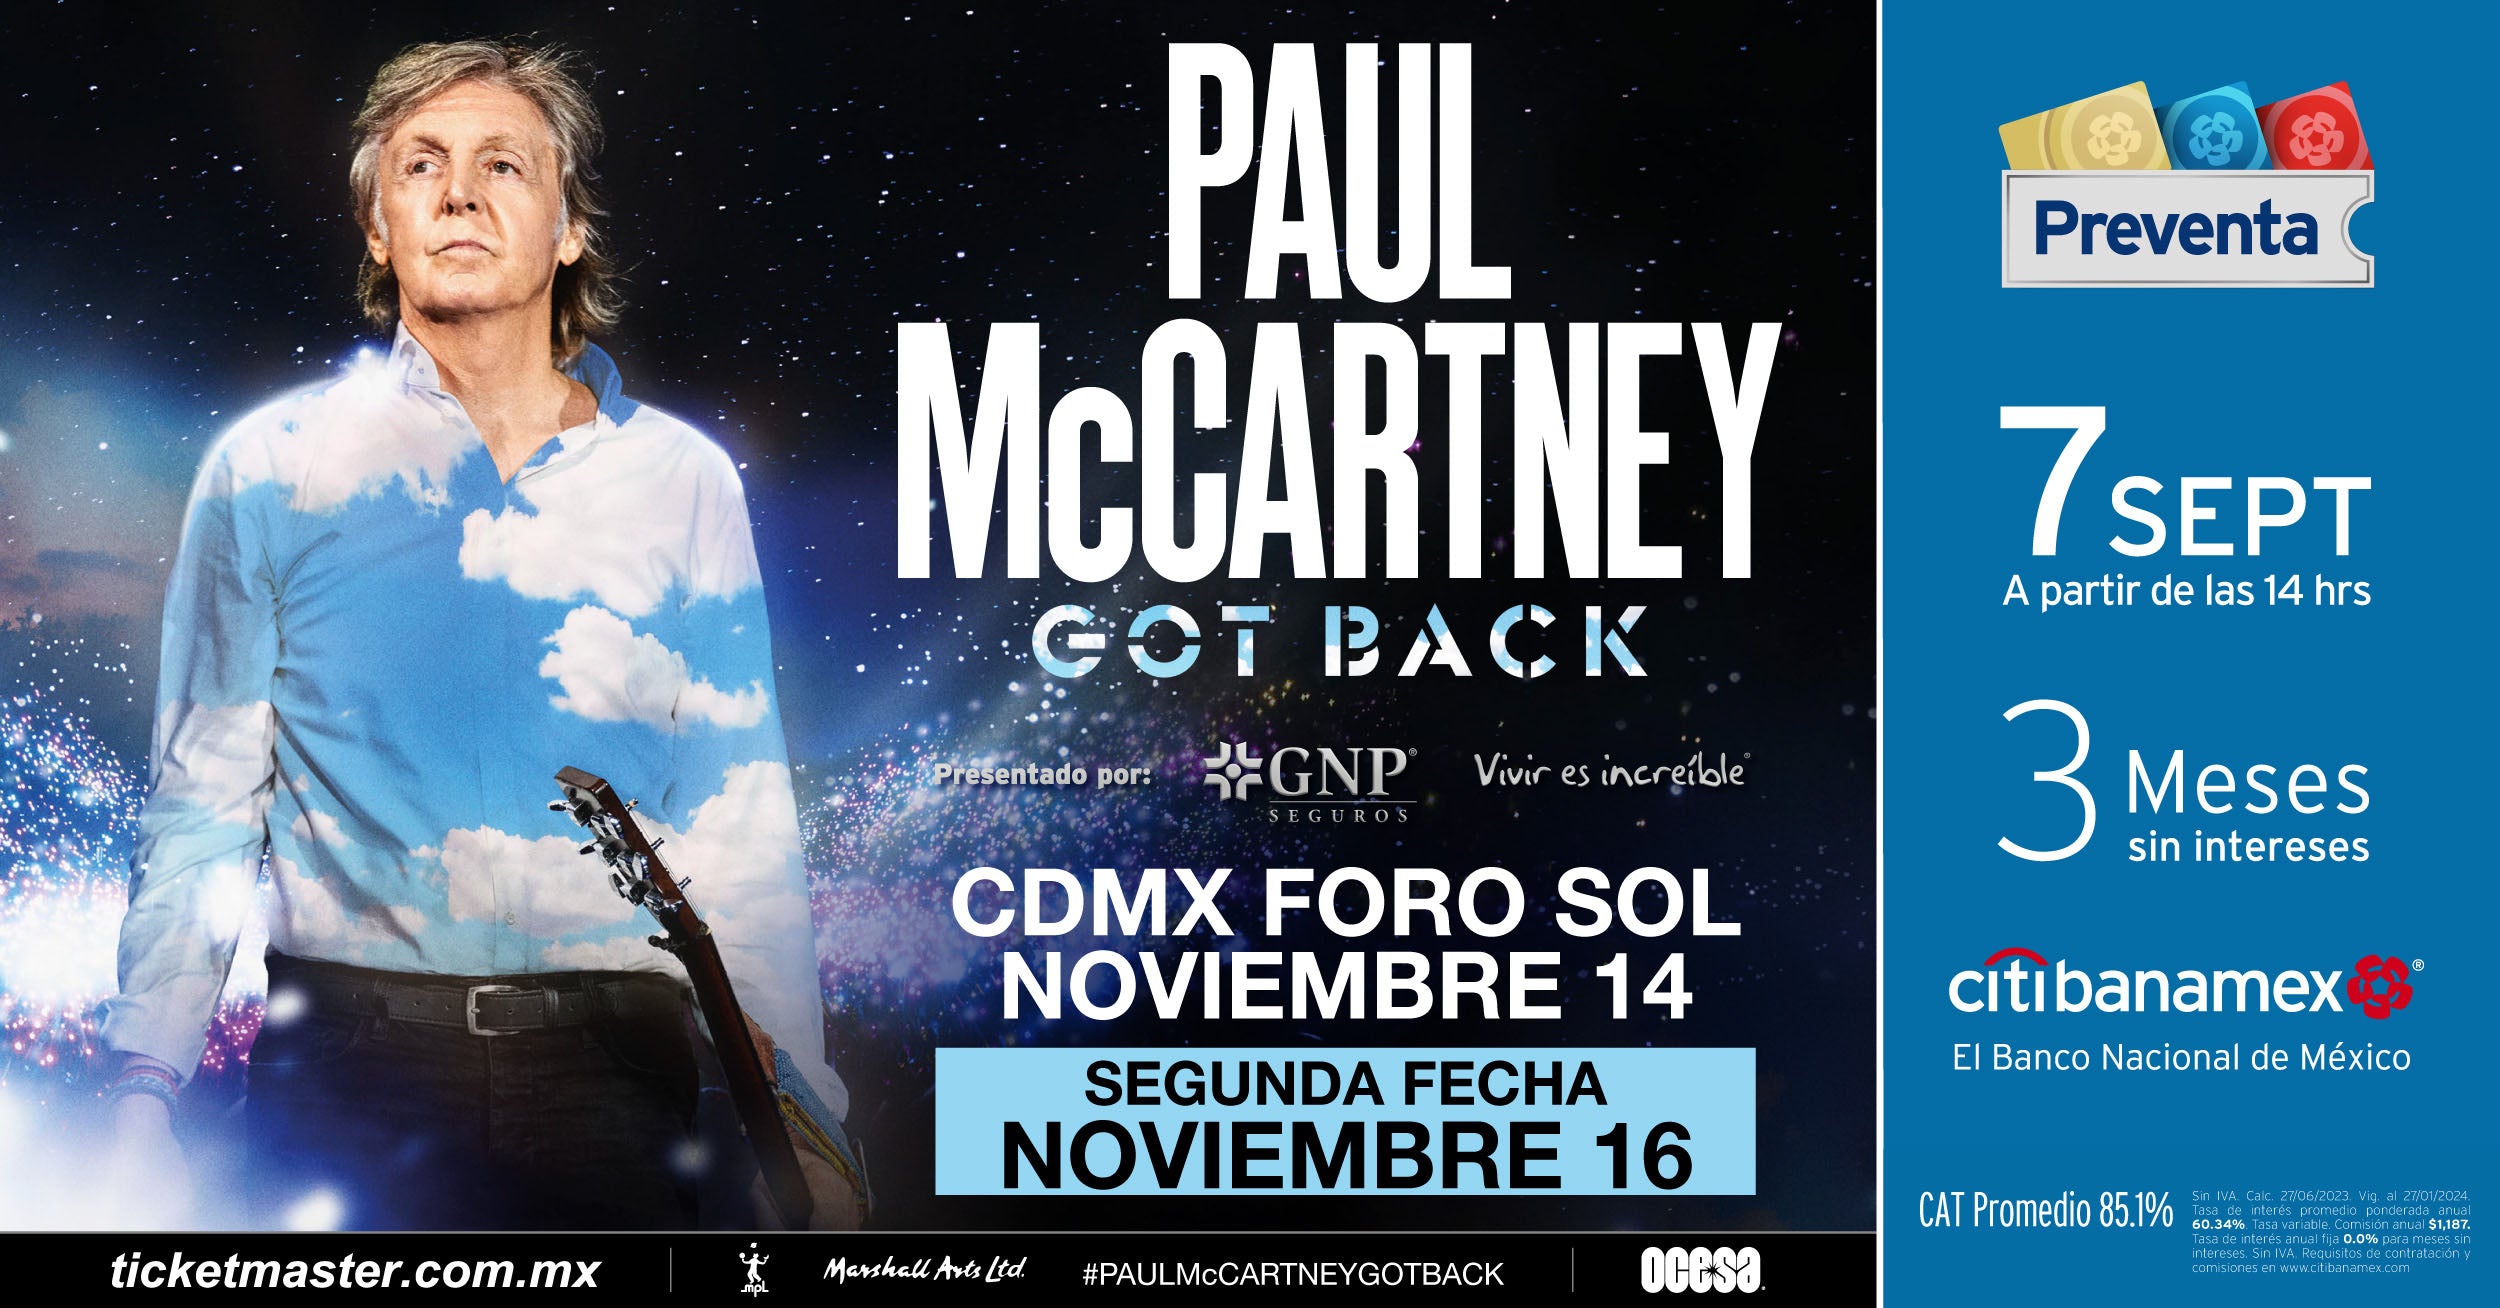 ¡Debido al éxito se confirma una segunda fecha de Paul McCartney en la CDMX! NEWS ¡Debido al éxito se confirma una segunda fecha de Paul McCartney en la CDMX!